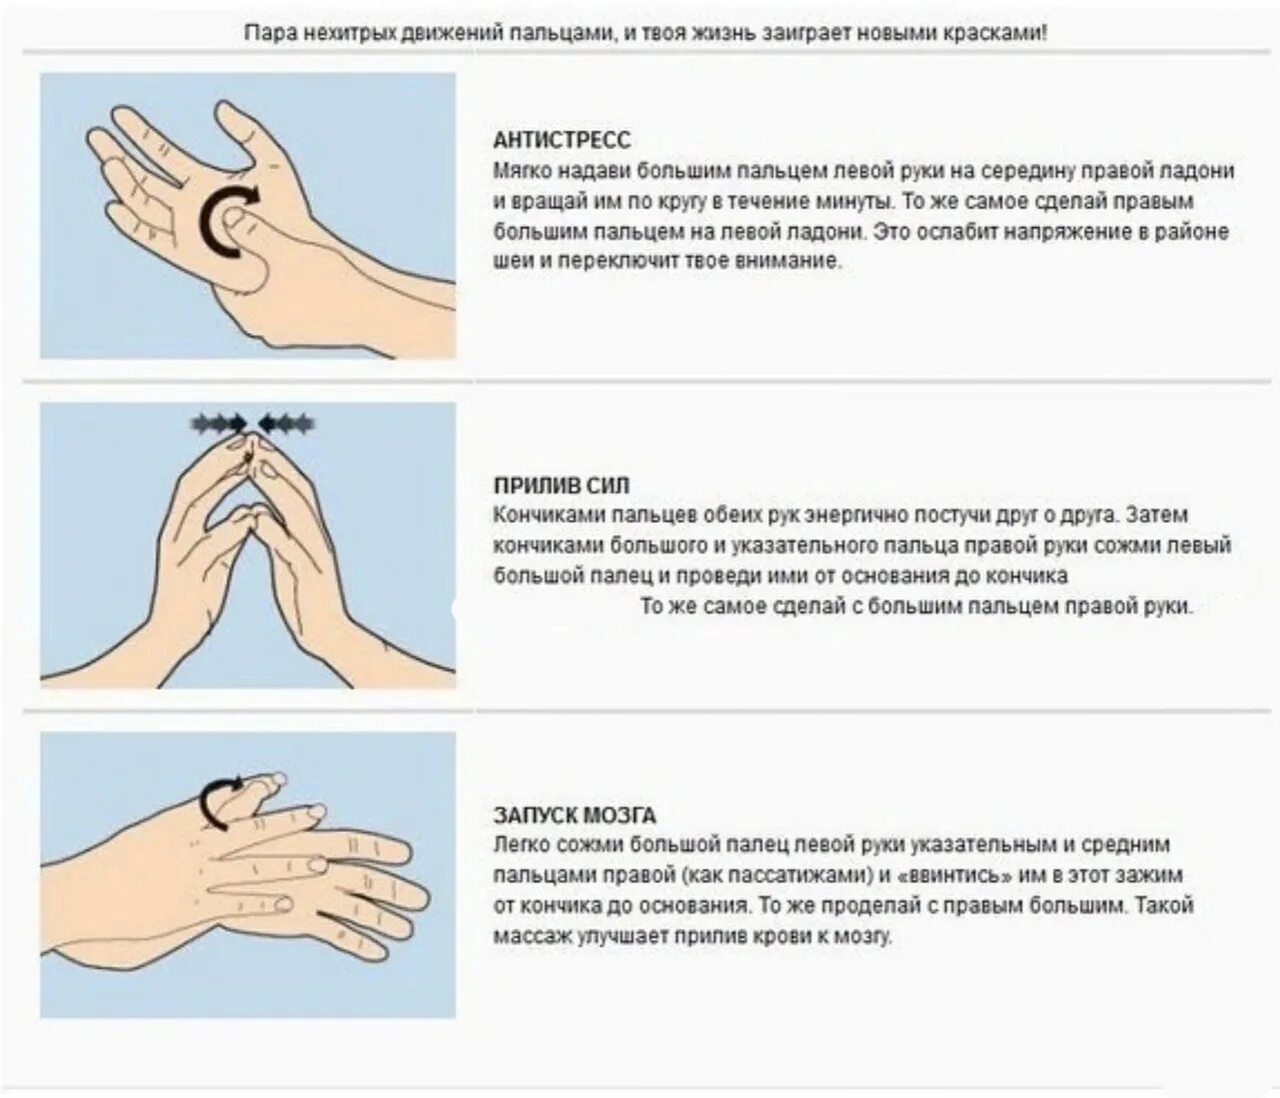 Проси не палец. Массаж и самомассаж рук. Упражнения для пальцев. Упражнения для пальцев рук. Самомассаж кистей и пальцев рук.